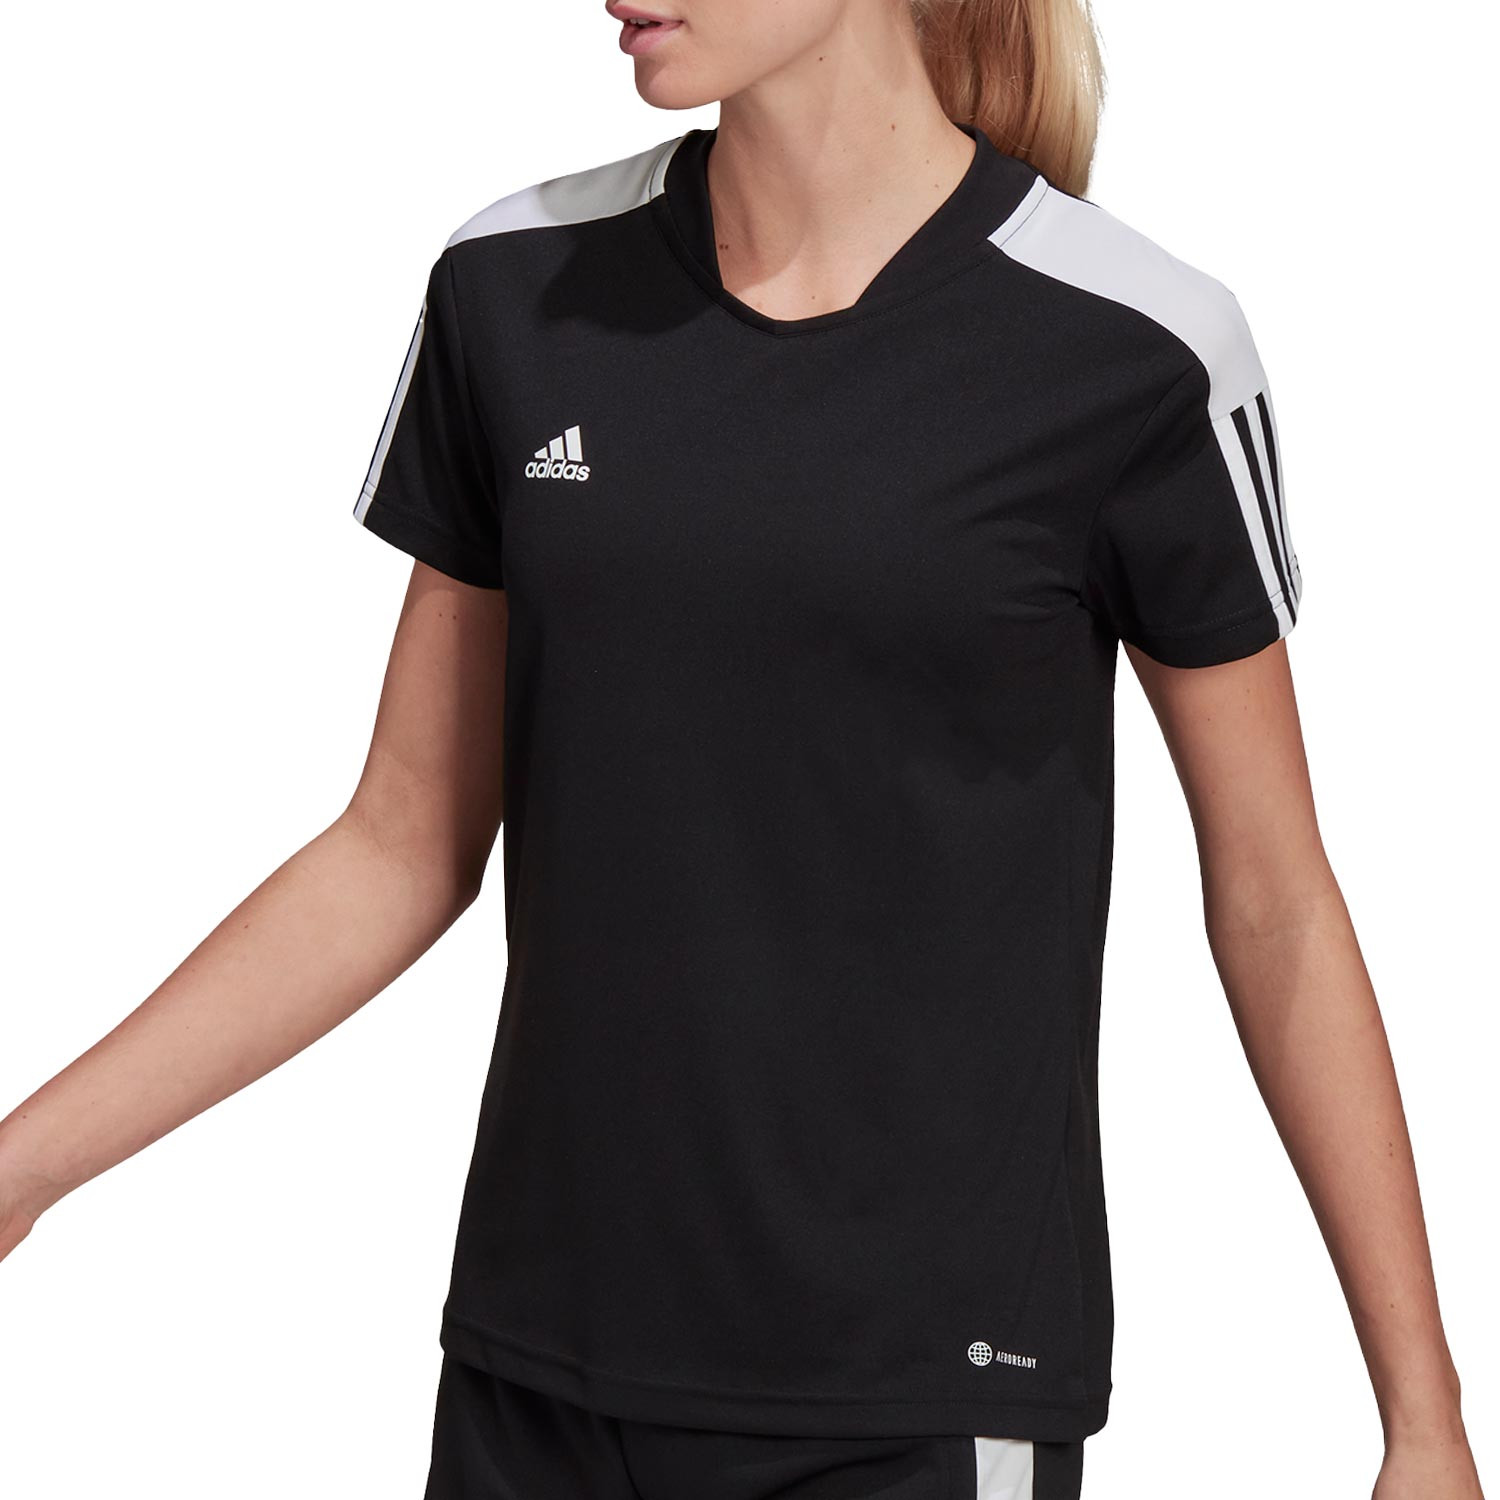 Camiseta adidas Tiro entrenamiento mujer negra |futbolmania